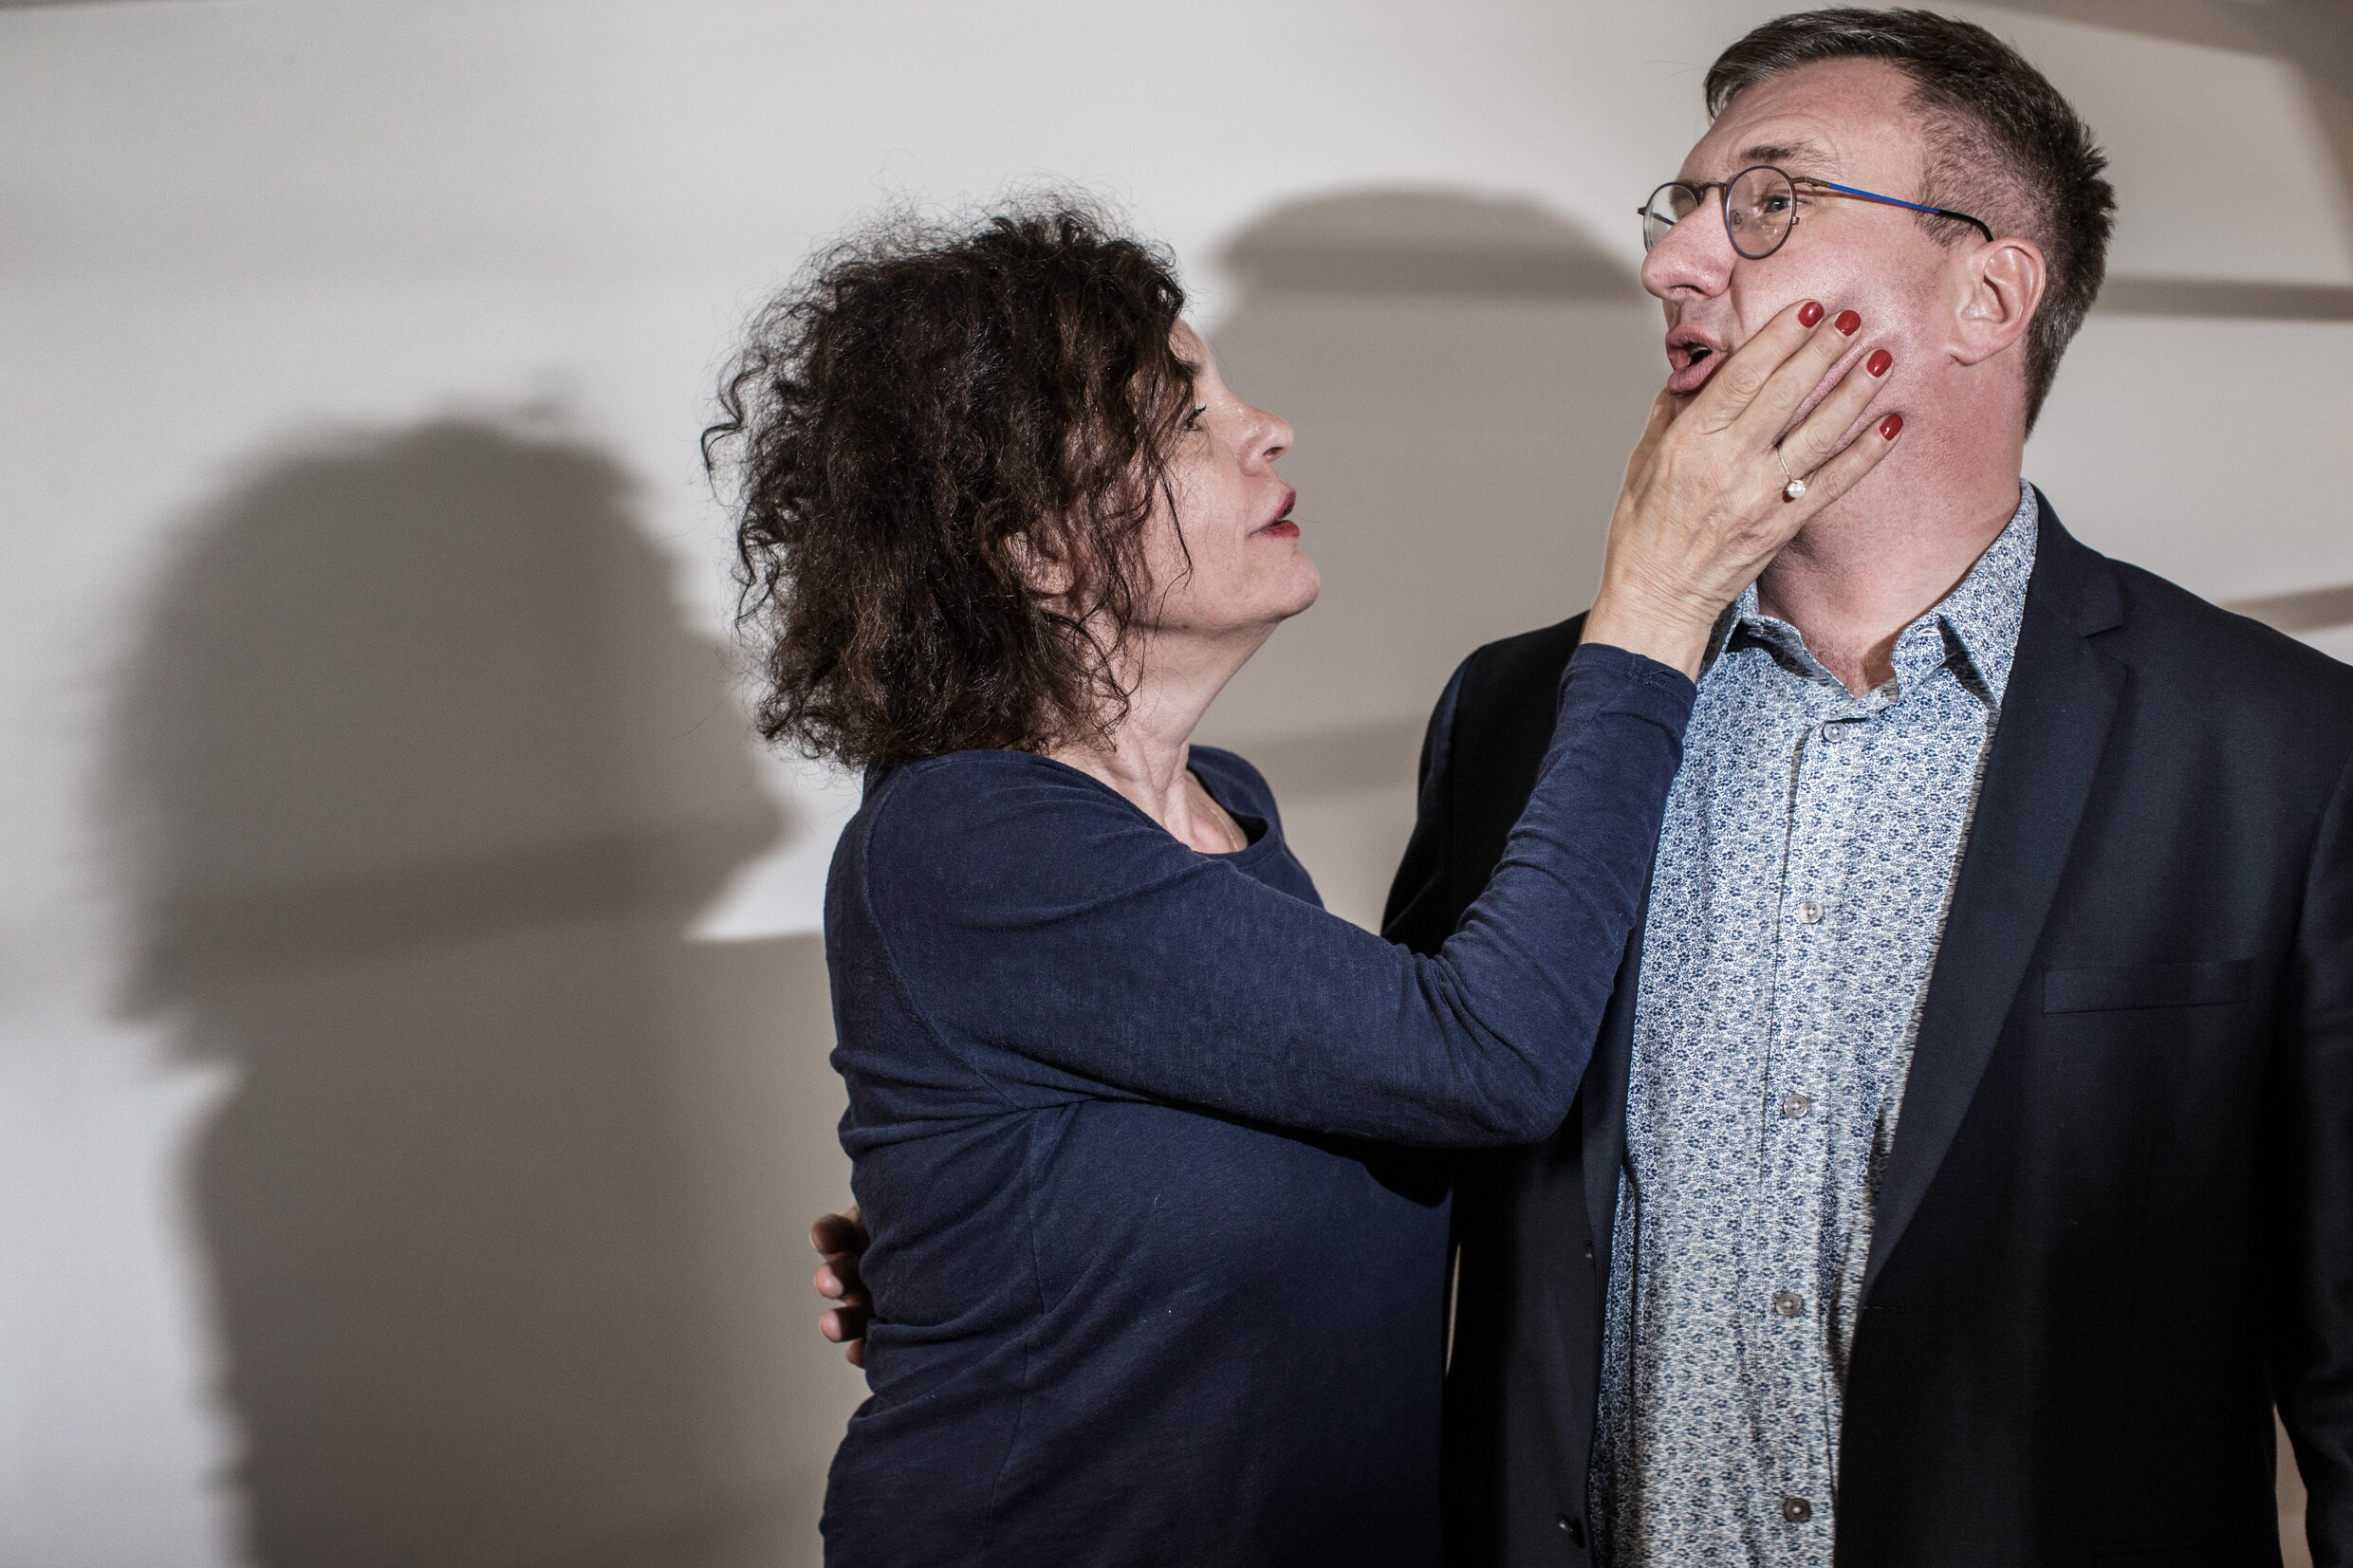 Hilde Van Mieghem en Jan Verheyen clashten rond #metoo